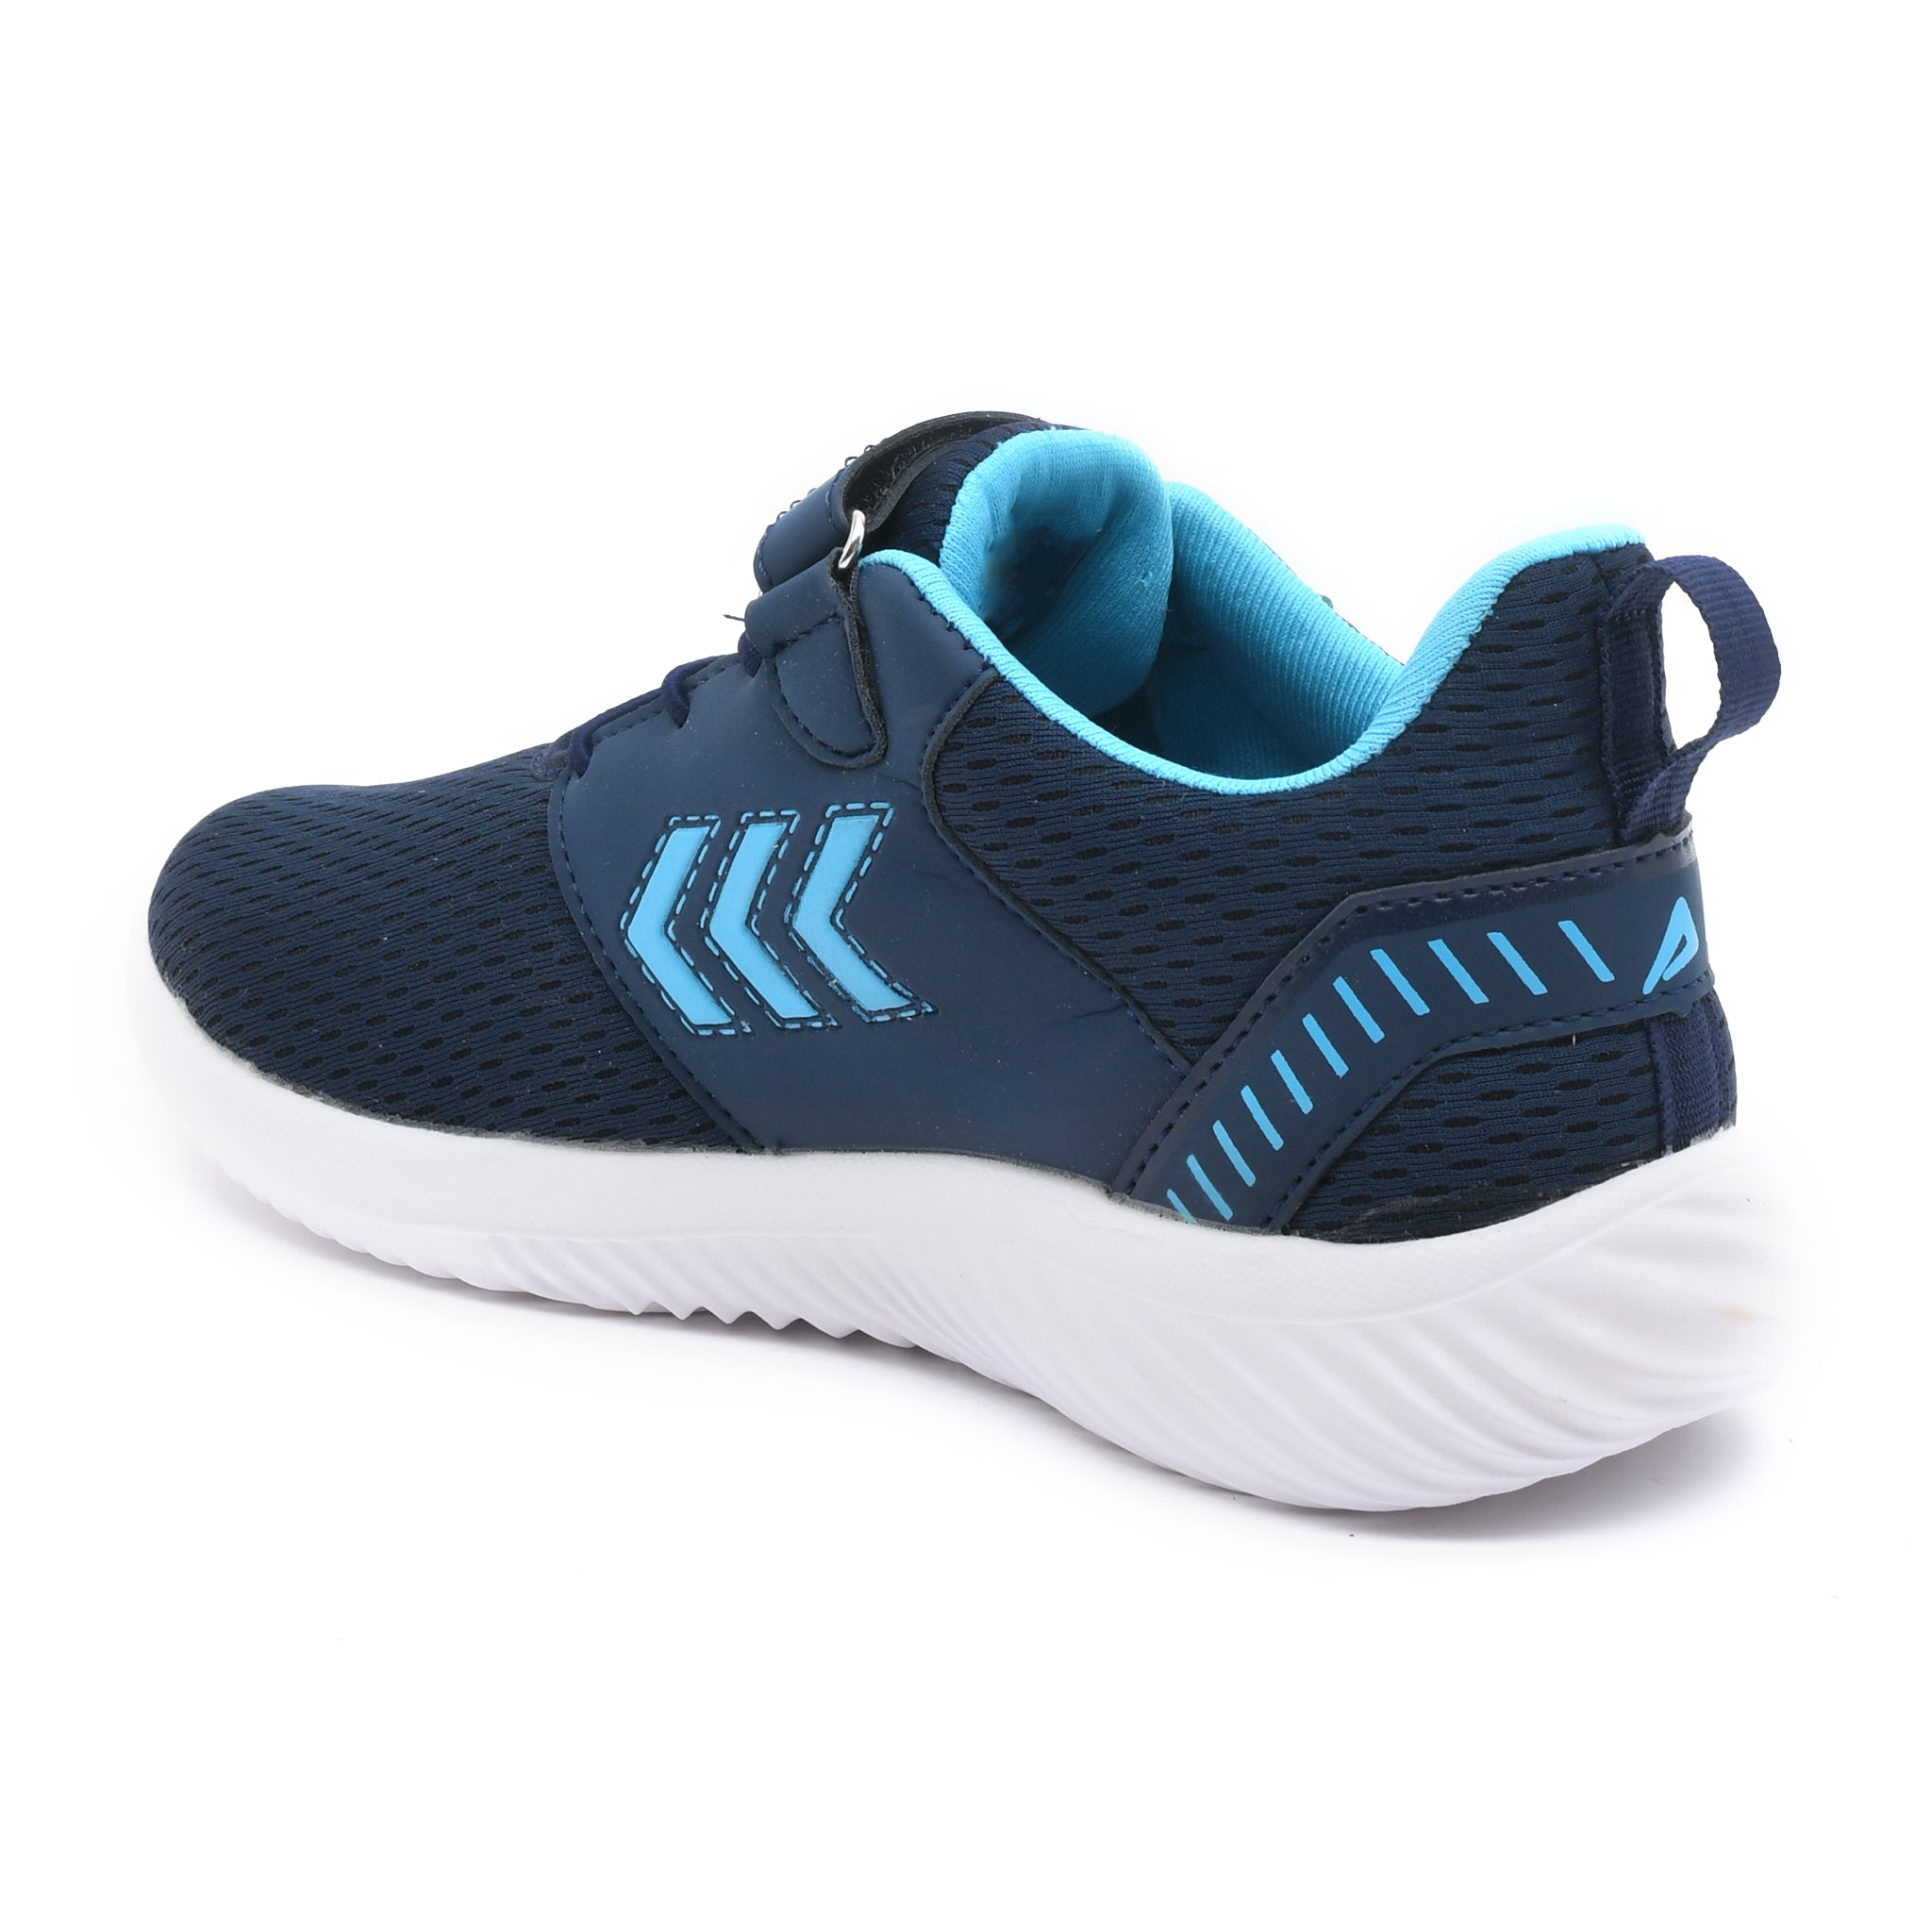 Impakto Celestial Navy Blue Women's Running Shoes